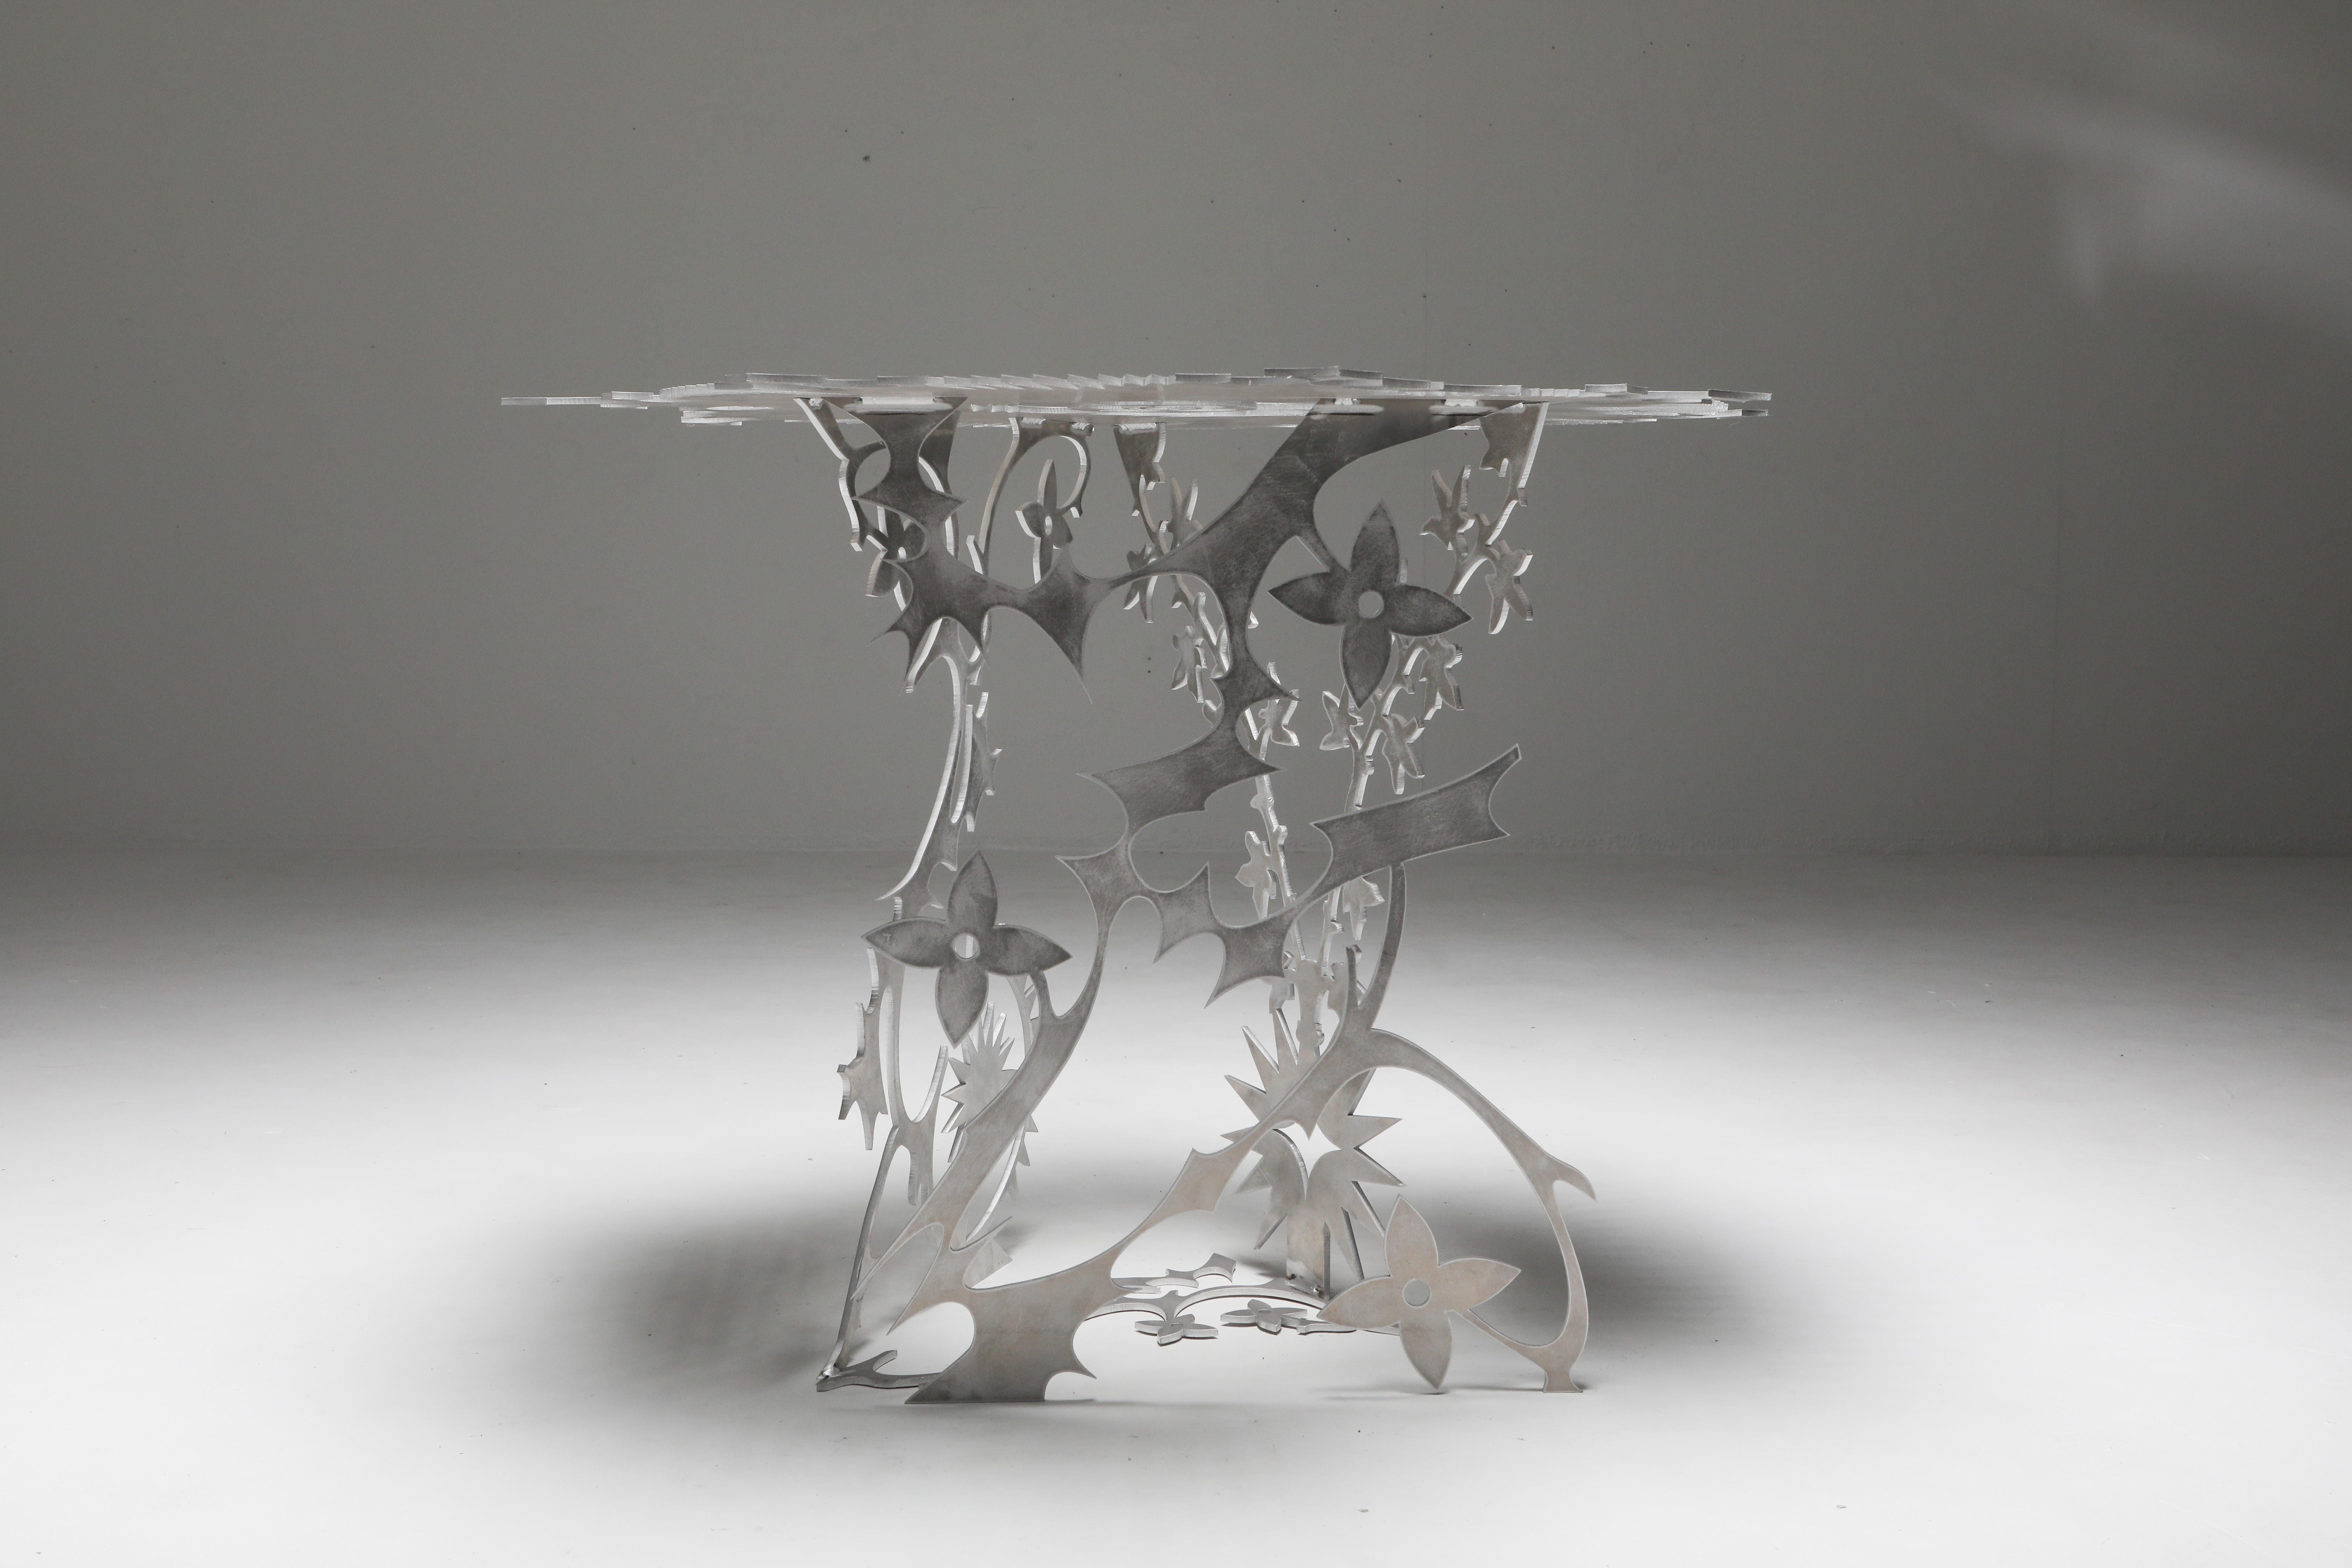 tisch 'Ornamentum 2' aus 6 mm starkem, gelasertem Aluminium. Entworfen als Teil eines Gemeinschaftsprojekts zwischen dem Raumgestalter Orson Van Beek und dem Modedesigner Quinten Mestdagh, bestehend aus drei einzigartigen funktionalen